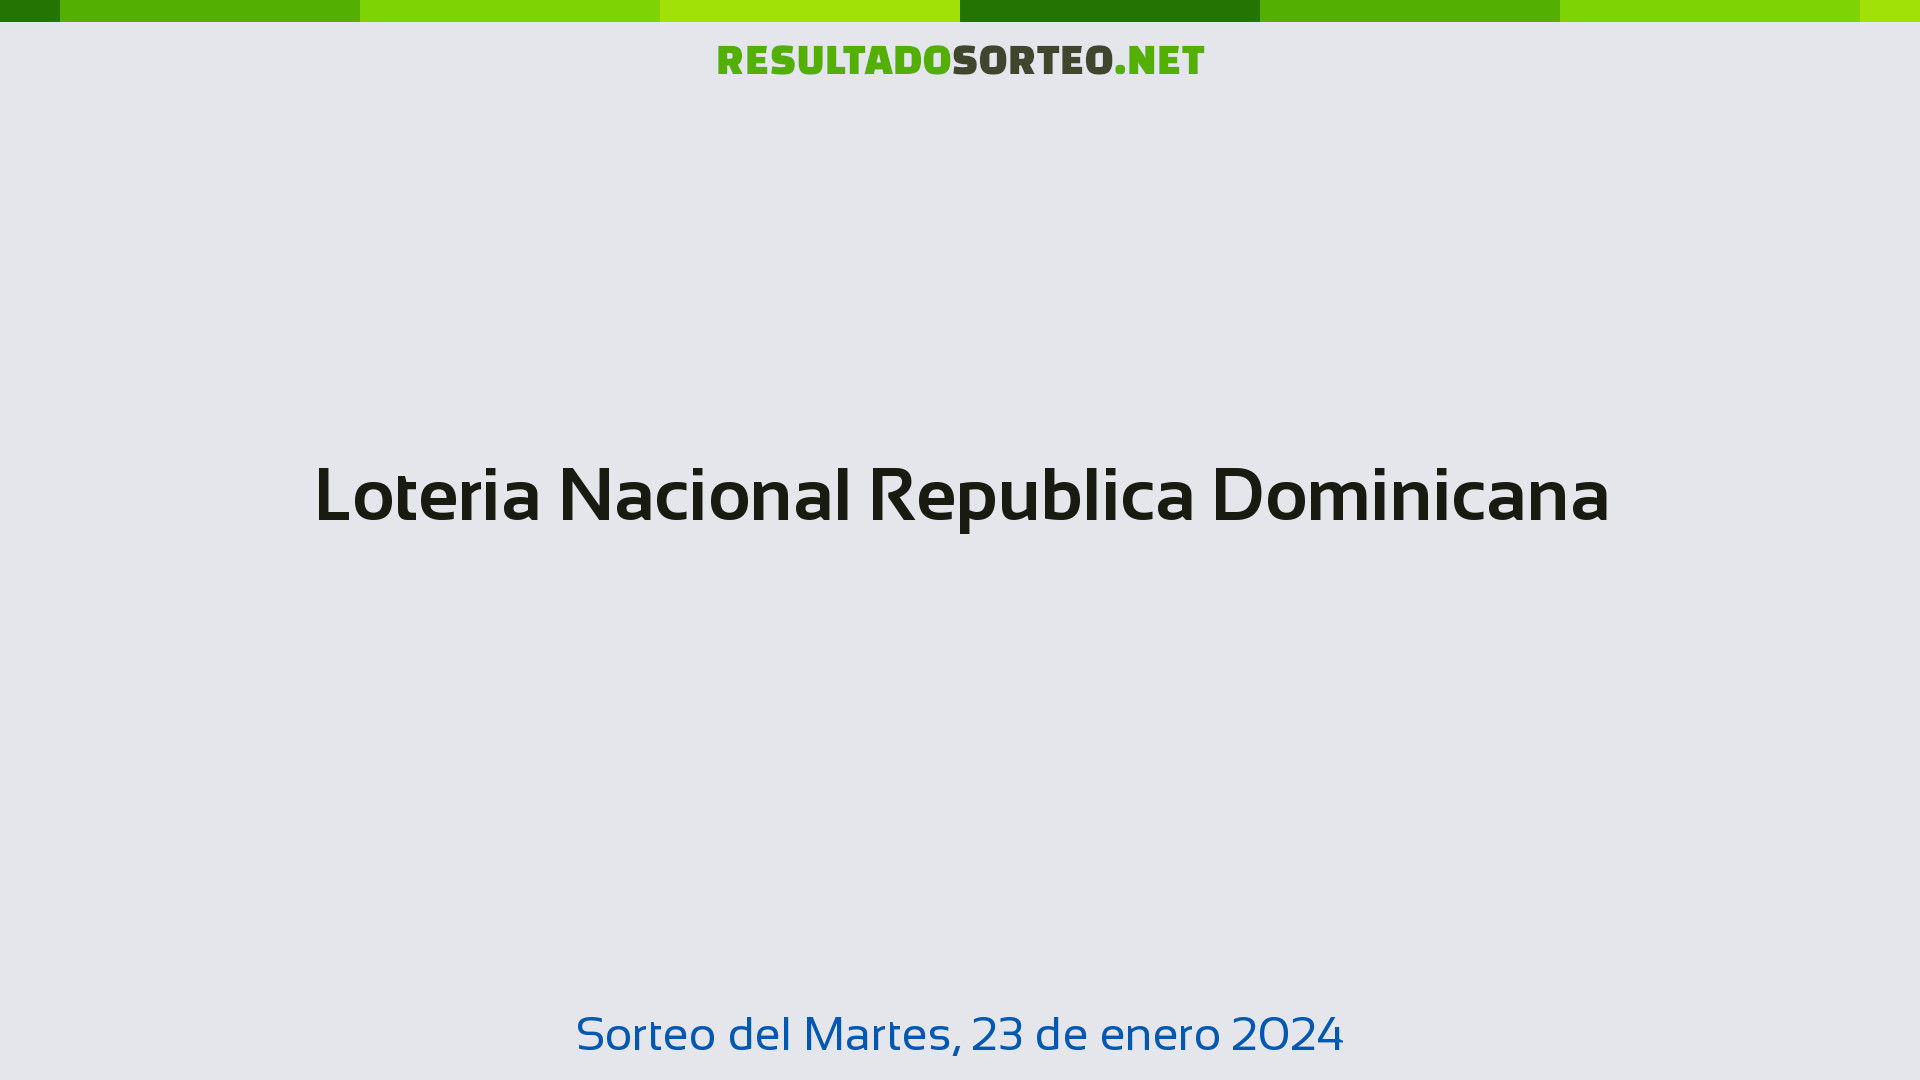 Loteria Nacional Republica Dominicana. Sorteo del día 23 de enero de 2024